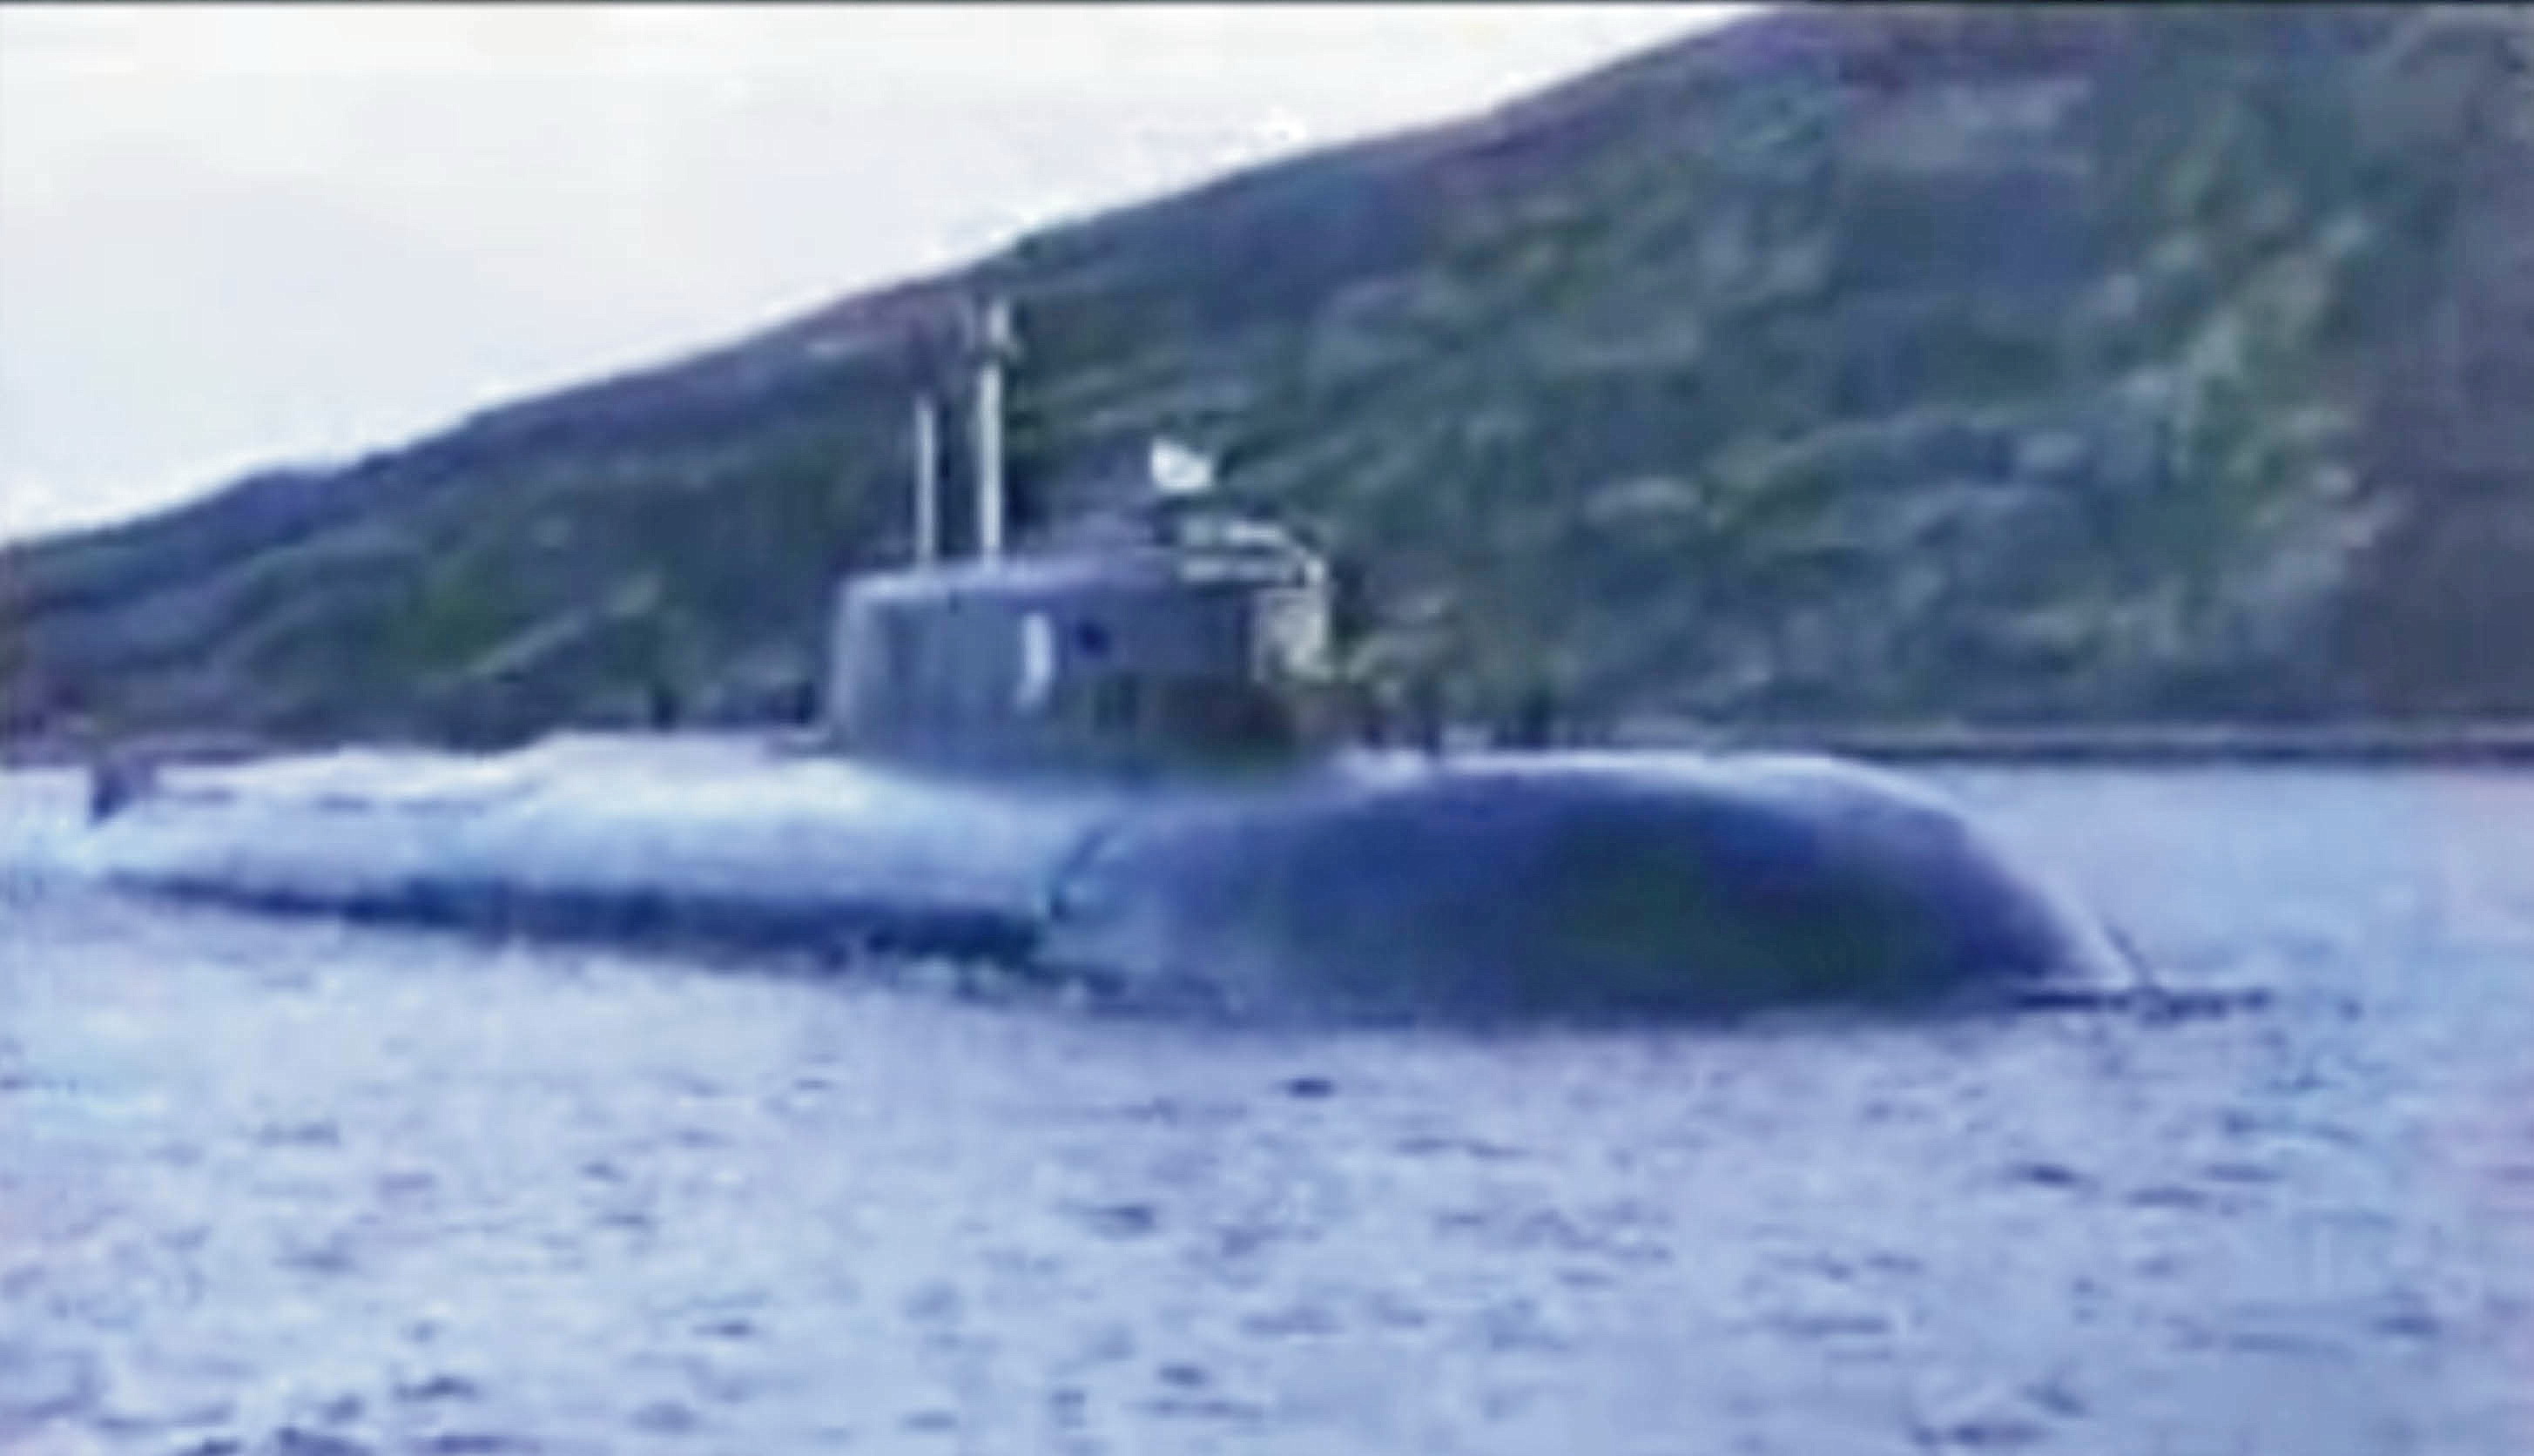 Курск субмарина в мутной воде. Подводная лодка к-141 «Курск». Курск подводная лодка катастрофа. Курск подводная лодка в мутной воде.